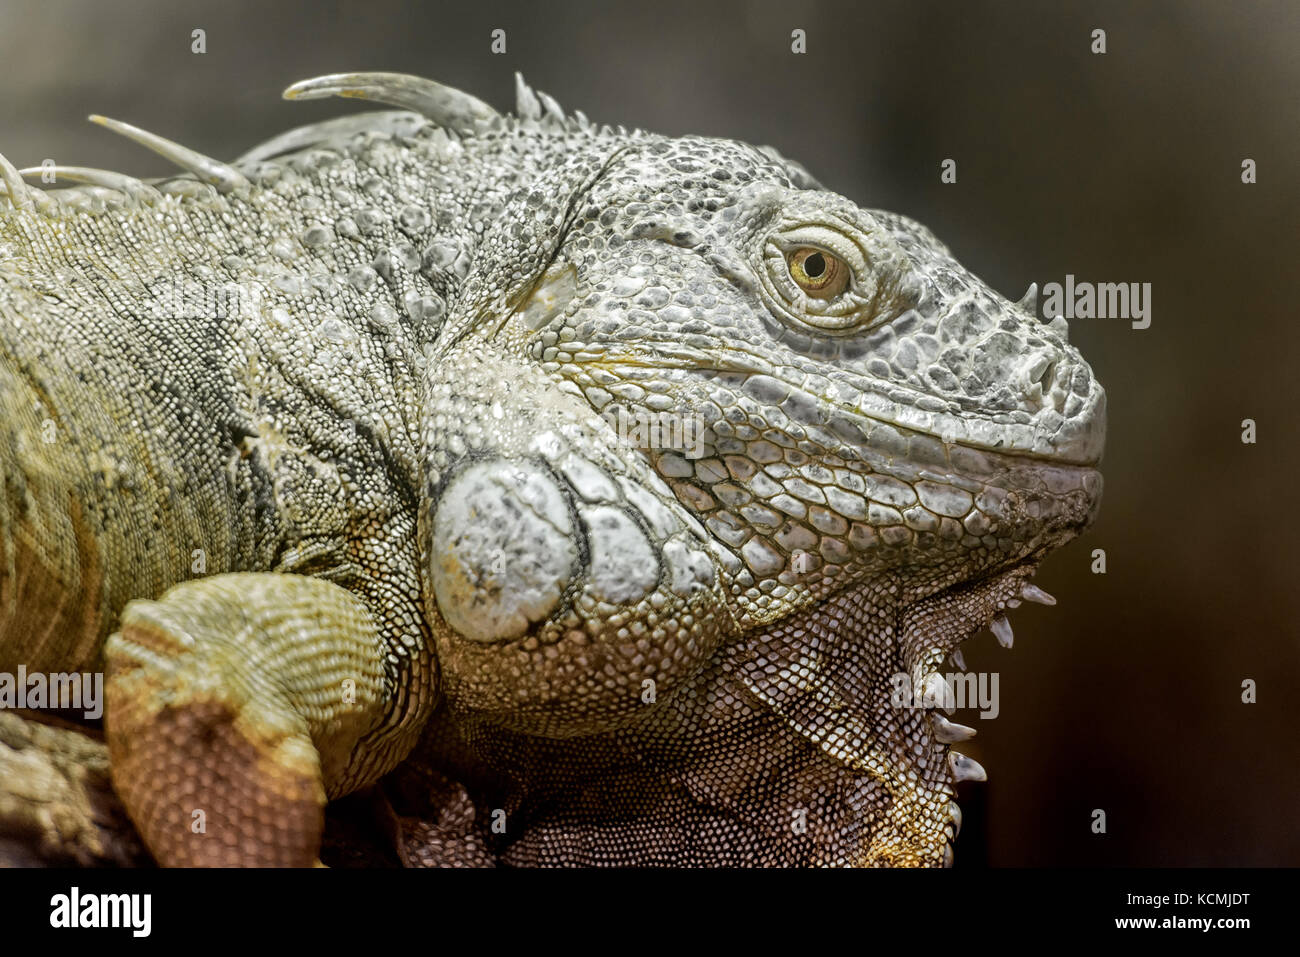 Anzeigen in der Nähe eines großen amerikanischen Grüner Leguan Kopf Stockfoto